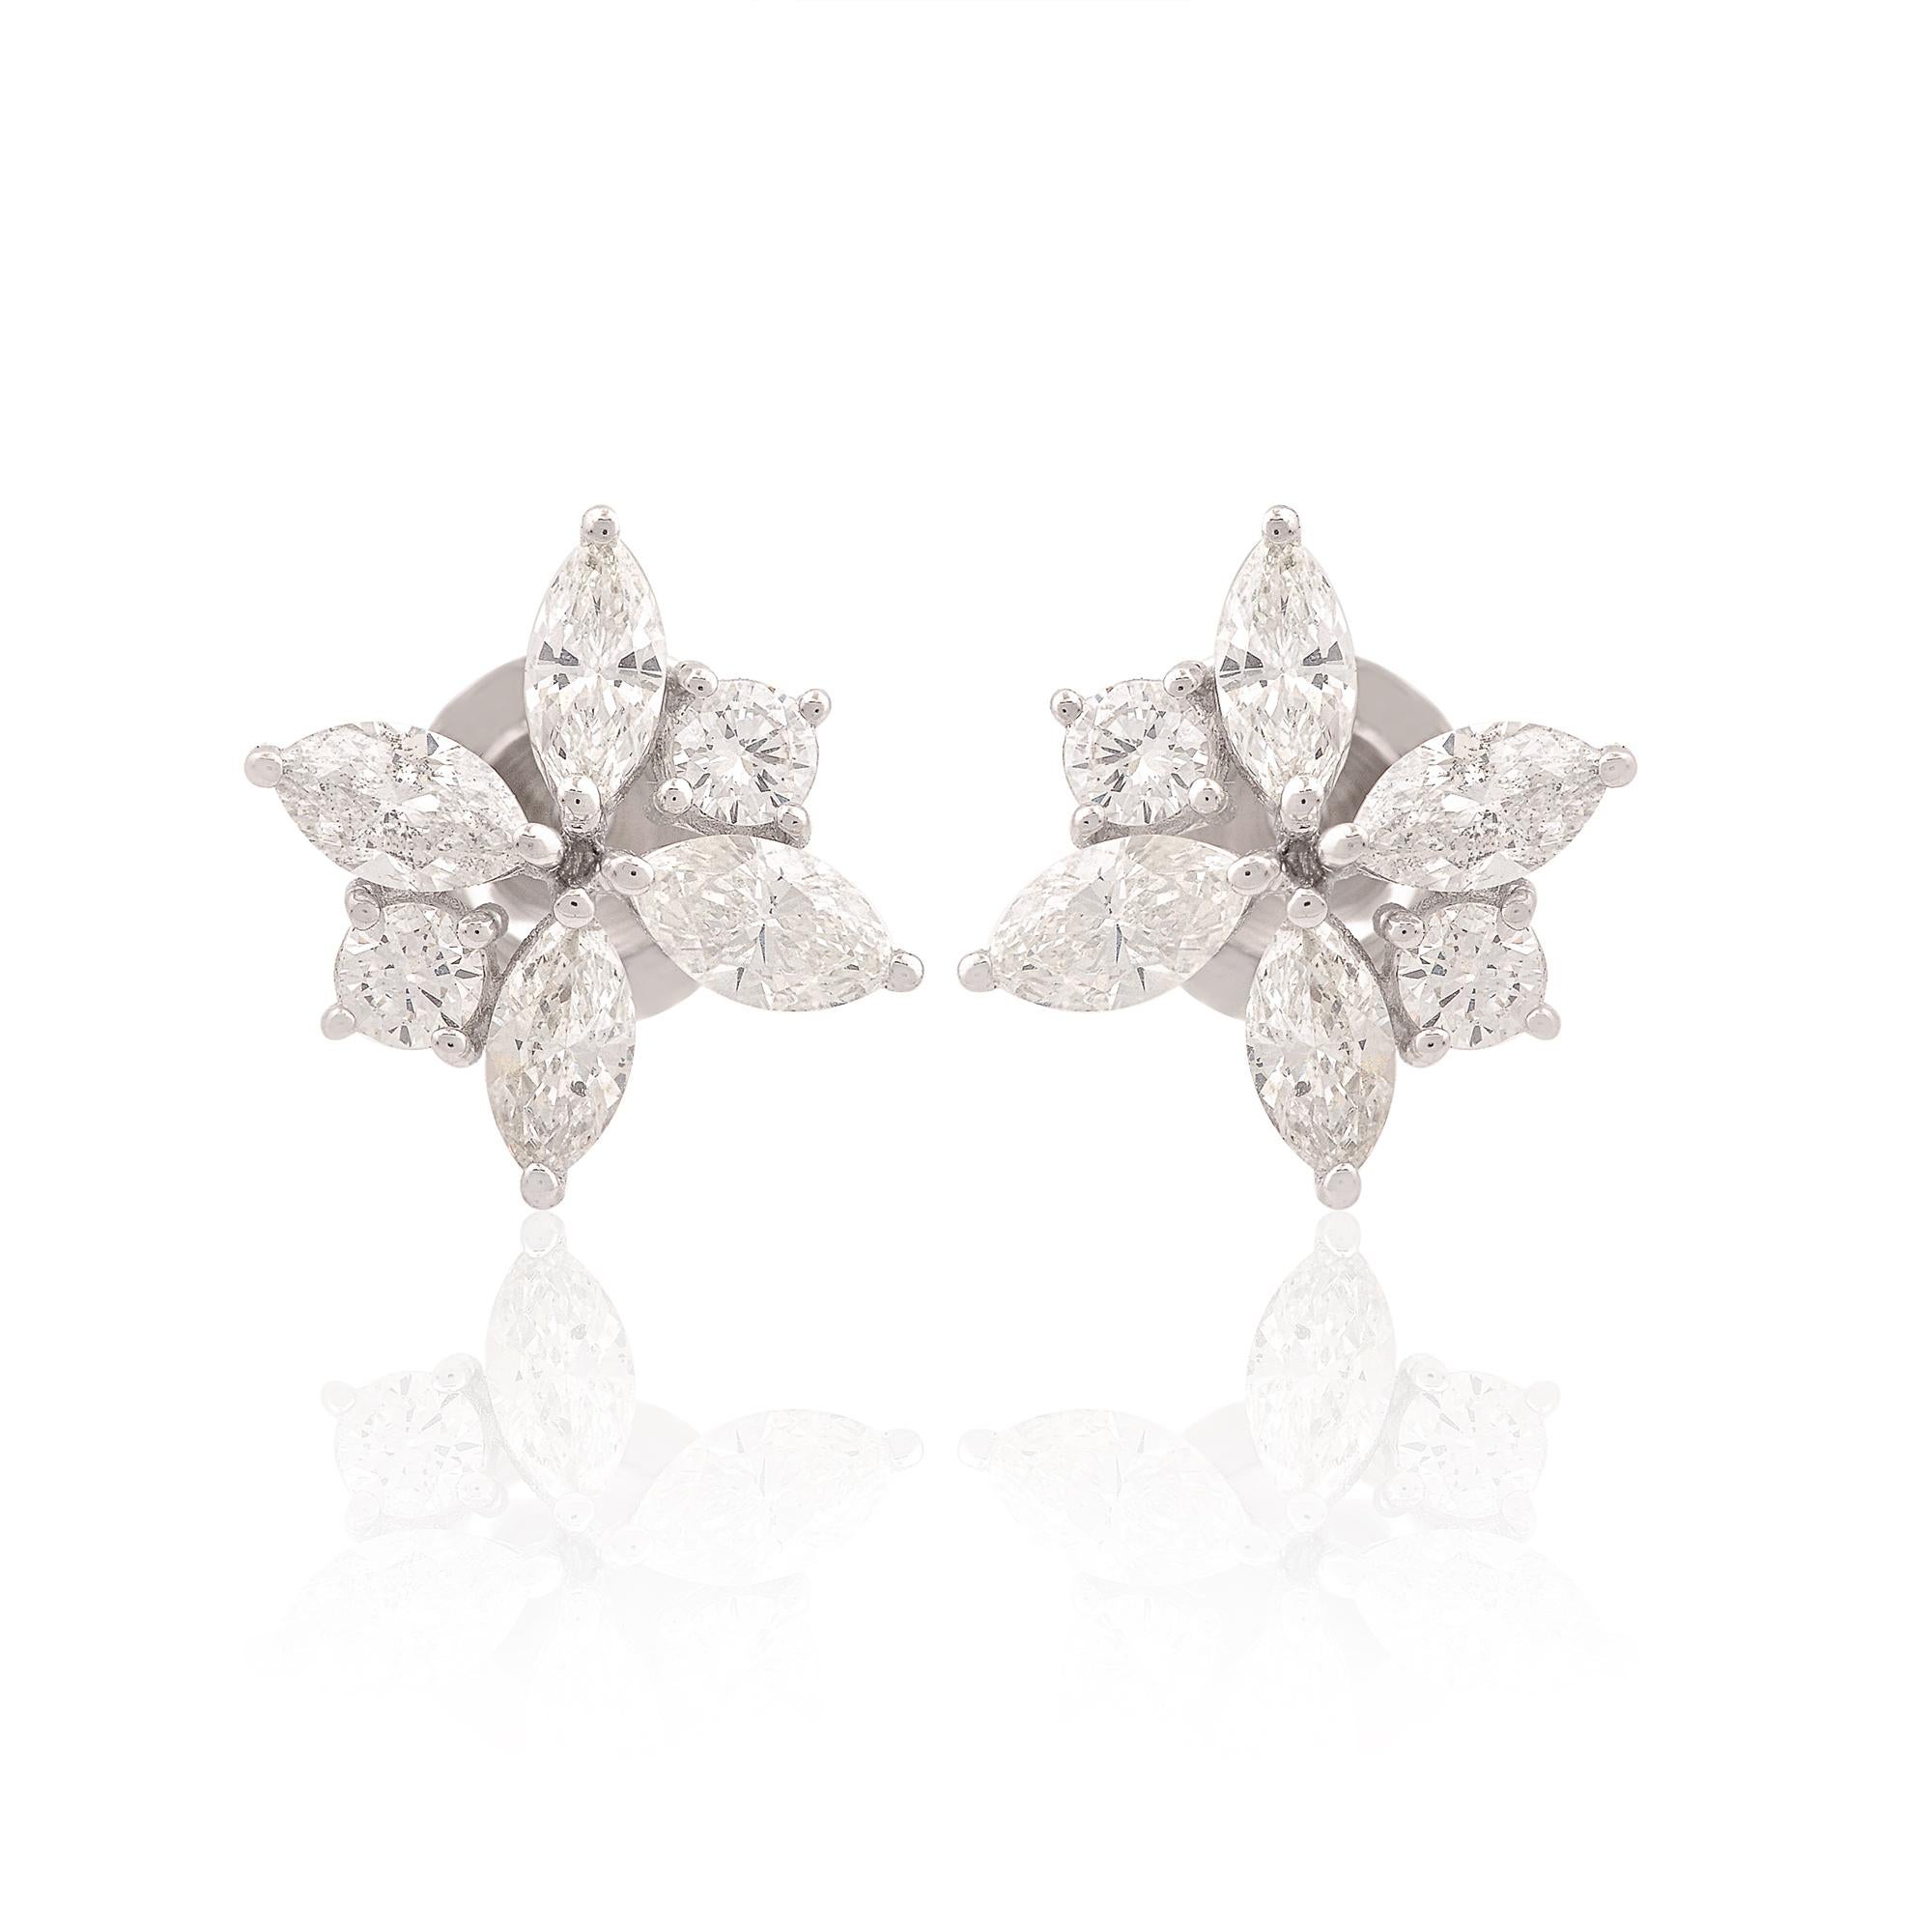 Laissez-vous séduire par l'élégance intemporelle de ces exquises boucles d'oreilles en diamant, chacune ornée d'une combinaison de diamants de taille marquise et ronde sertis dans un luxueux or blanc 18 carats. Réalisées avec une attention